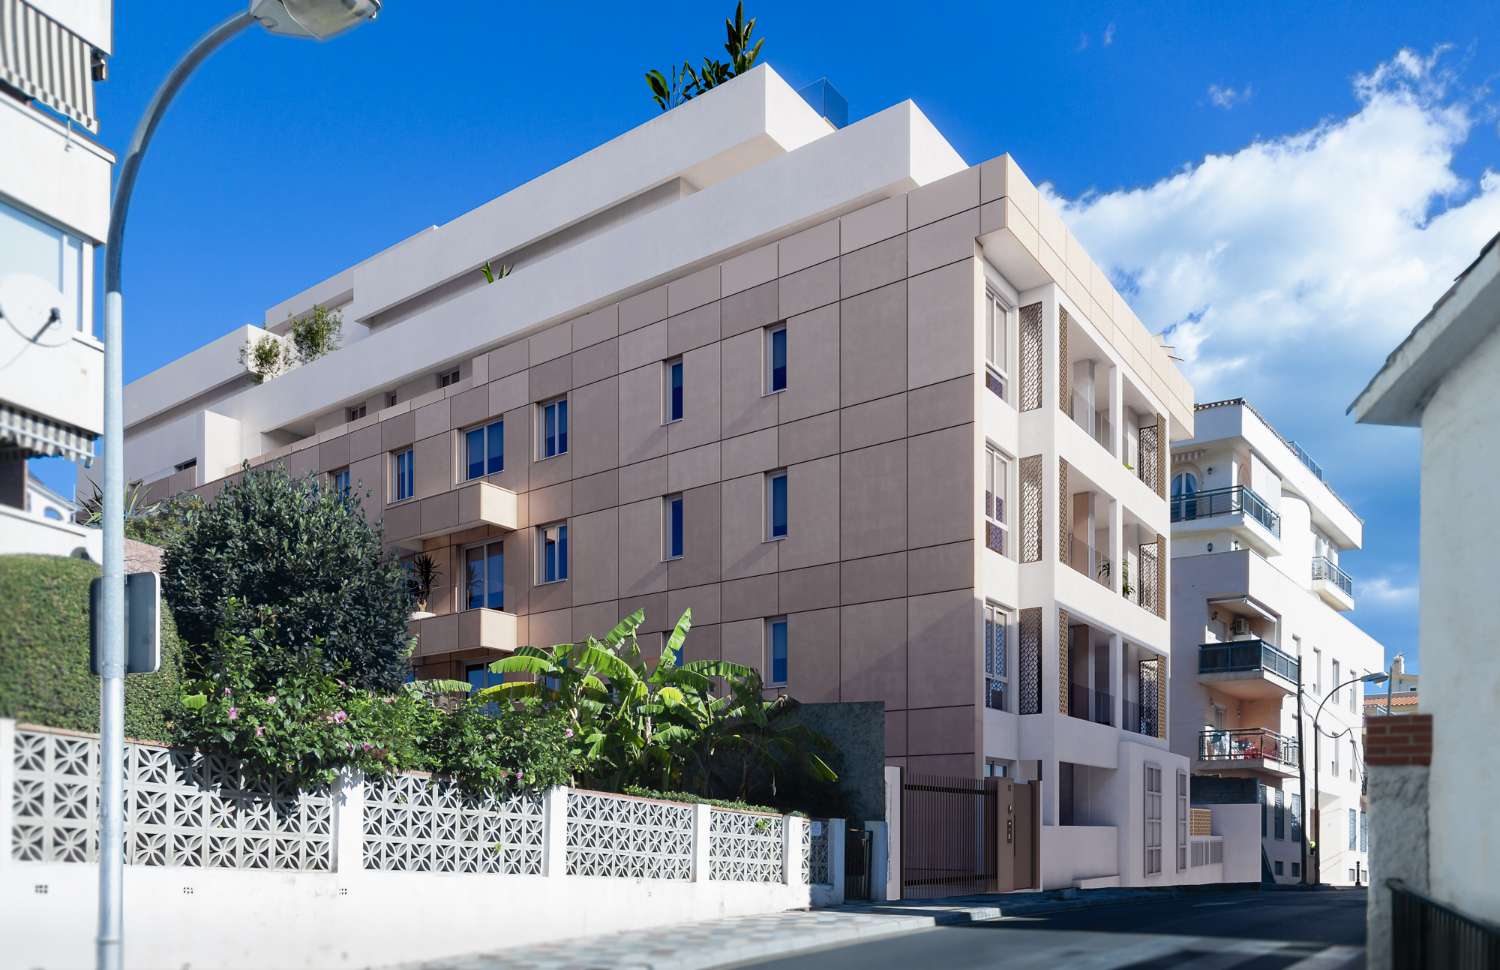 Lage prijzen van drie slaapkamers met privétuin in aanbouw in stedelijk centrum naast diensten en 10 minuten van het strand